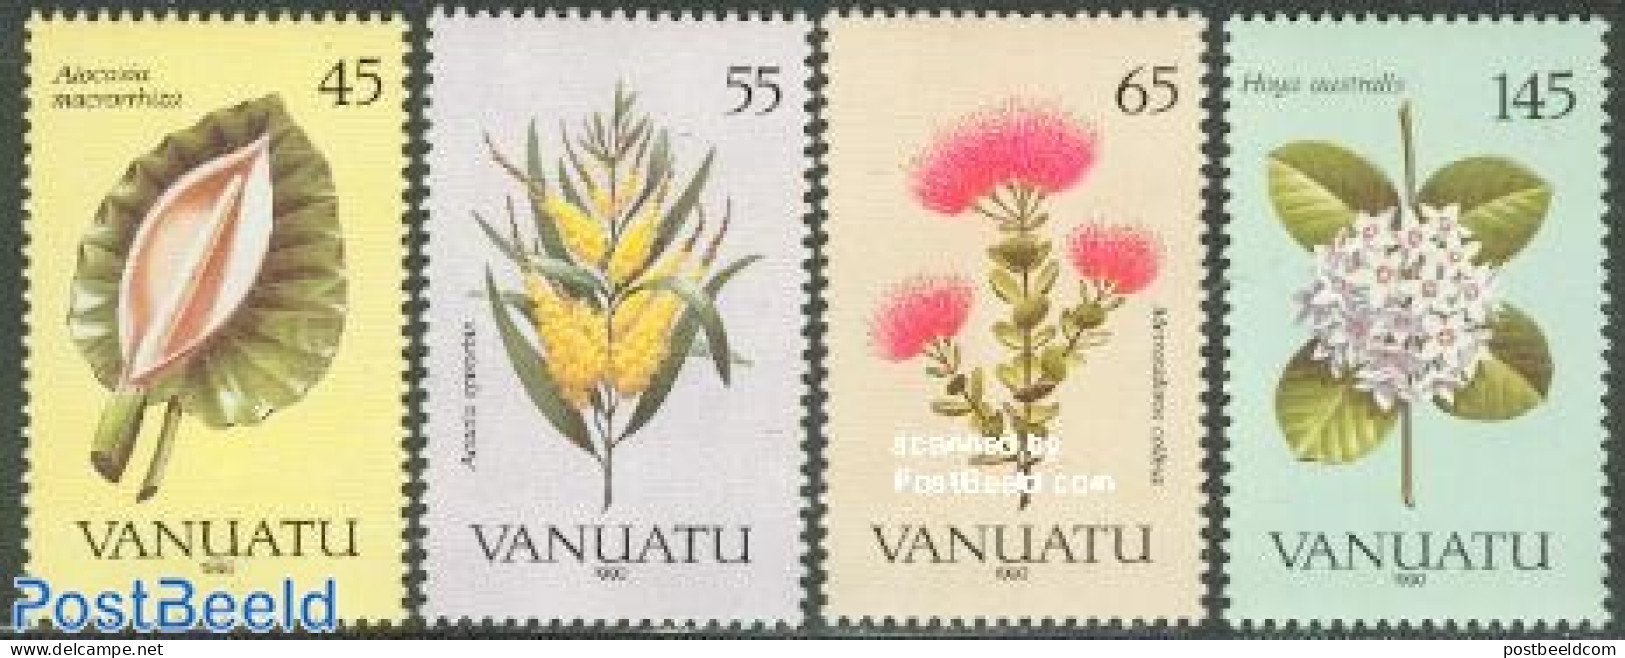 Vanuatu 1990 Flowers 4v, Mint NH, Nature - Flowers & Plants - Vanuatu (1980-...)